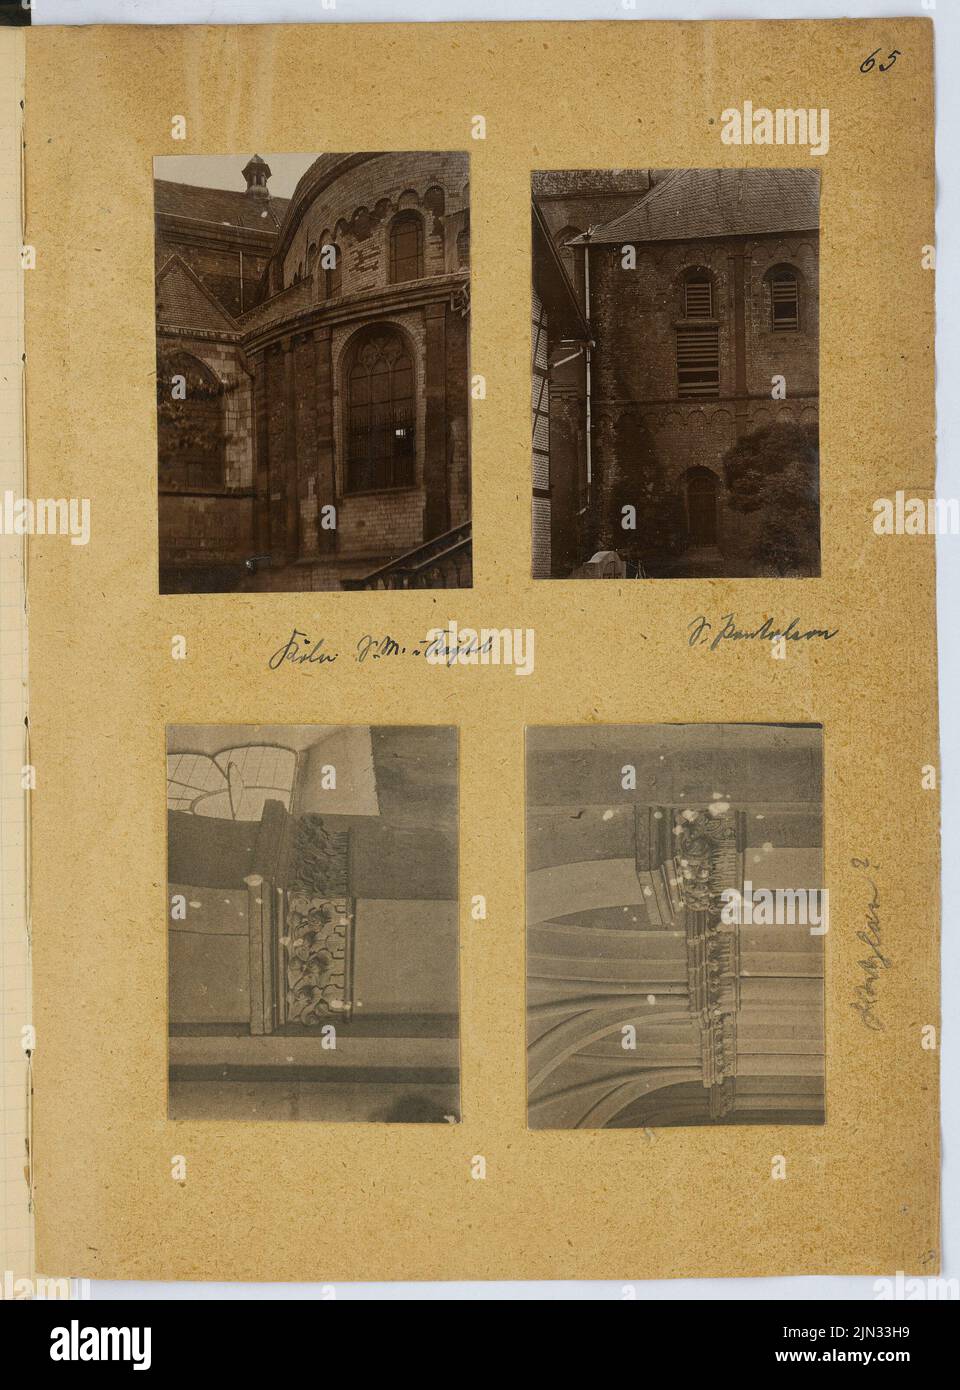 Stiehl otto (1860-1940): Album fotografico e di disegno 8: Santa Maria in Campidoglio, Colonia. San Pantaleon, Colonia Foto Stock